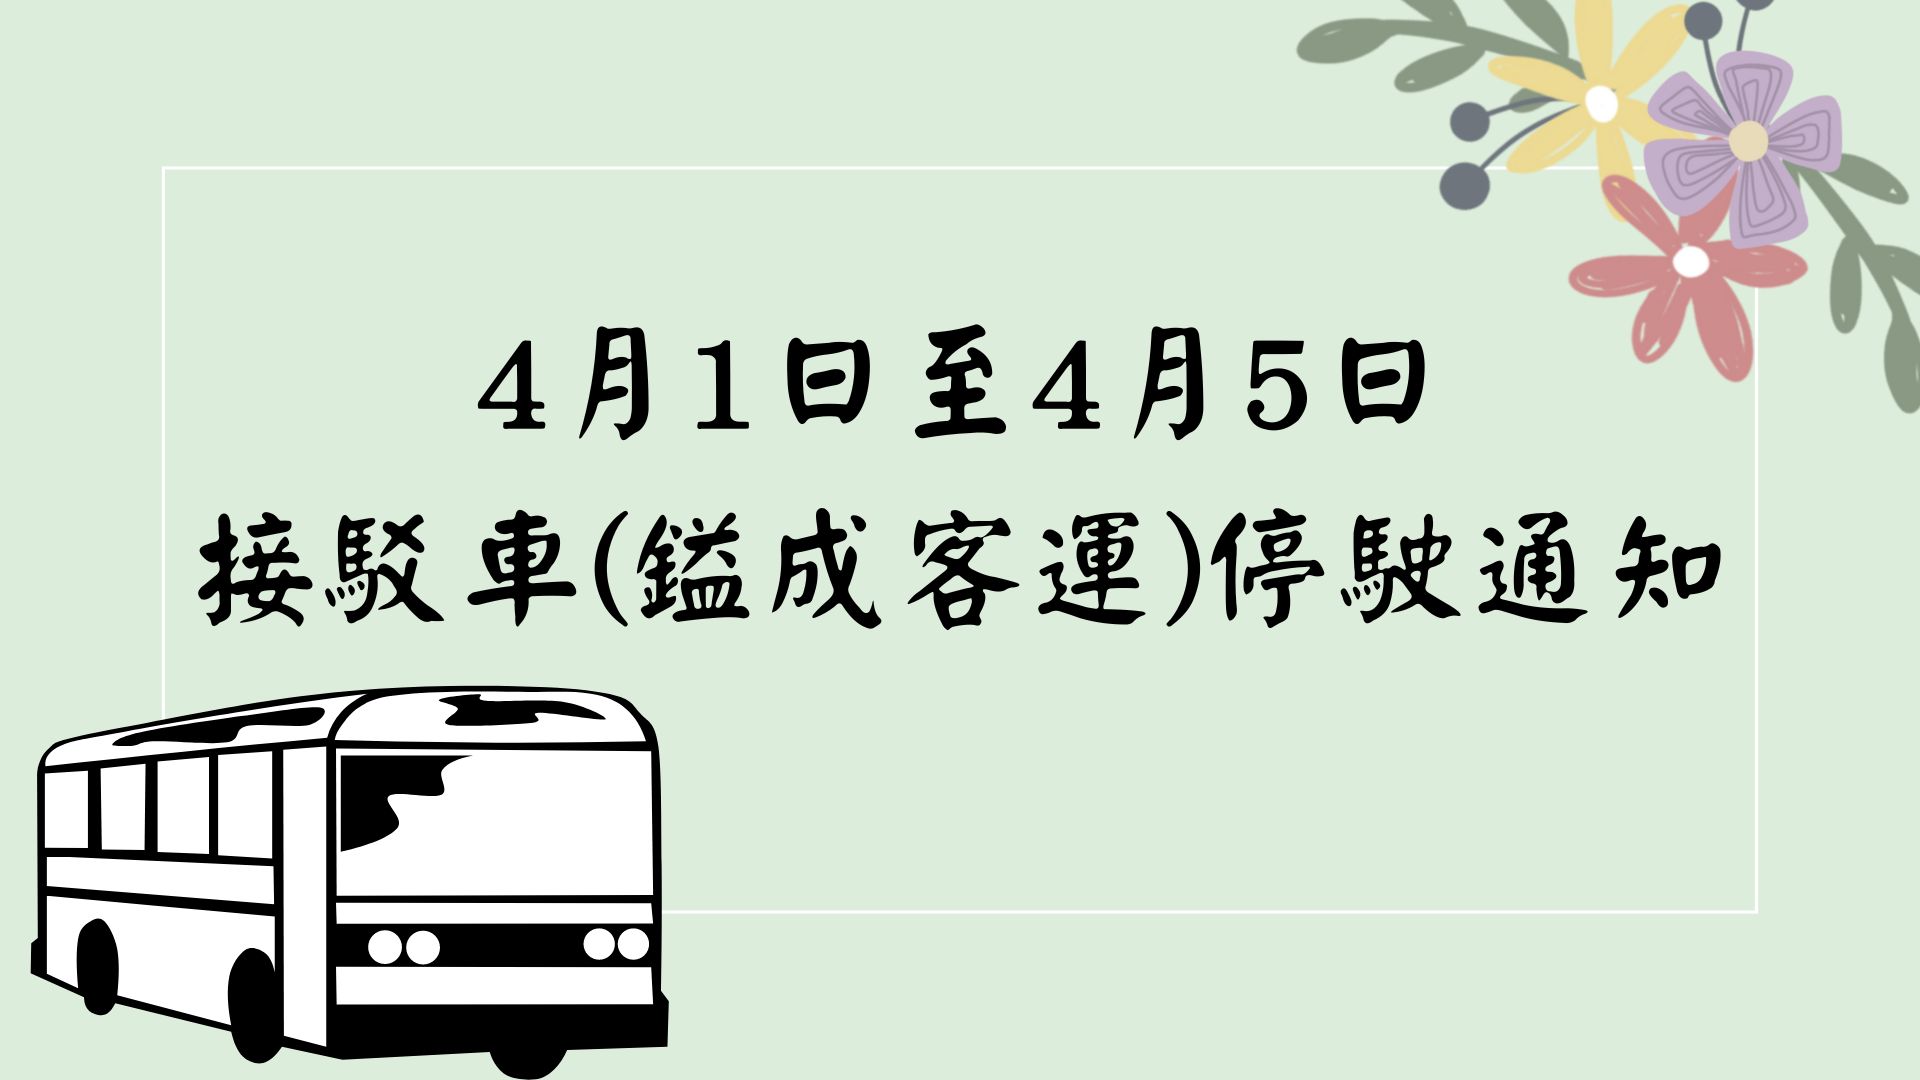 【轉知】4月1日至4月5日校本部至南投分部接駁車(鎰成客運)停駛通知